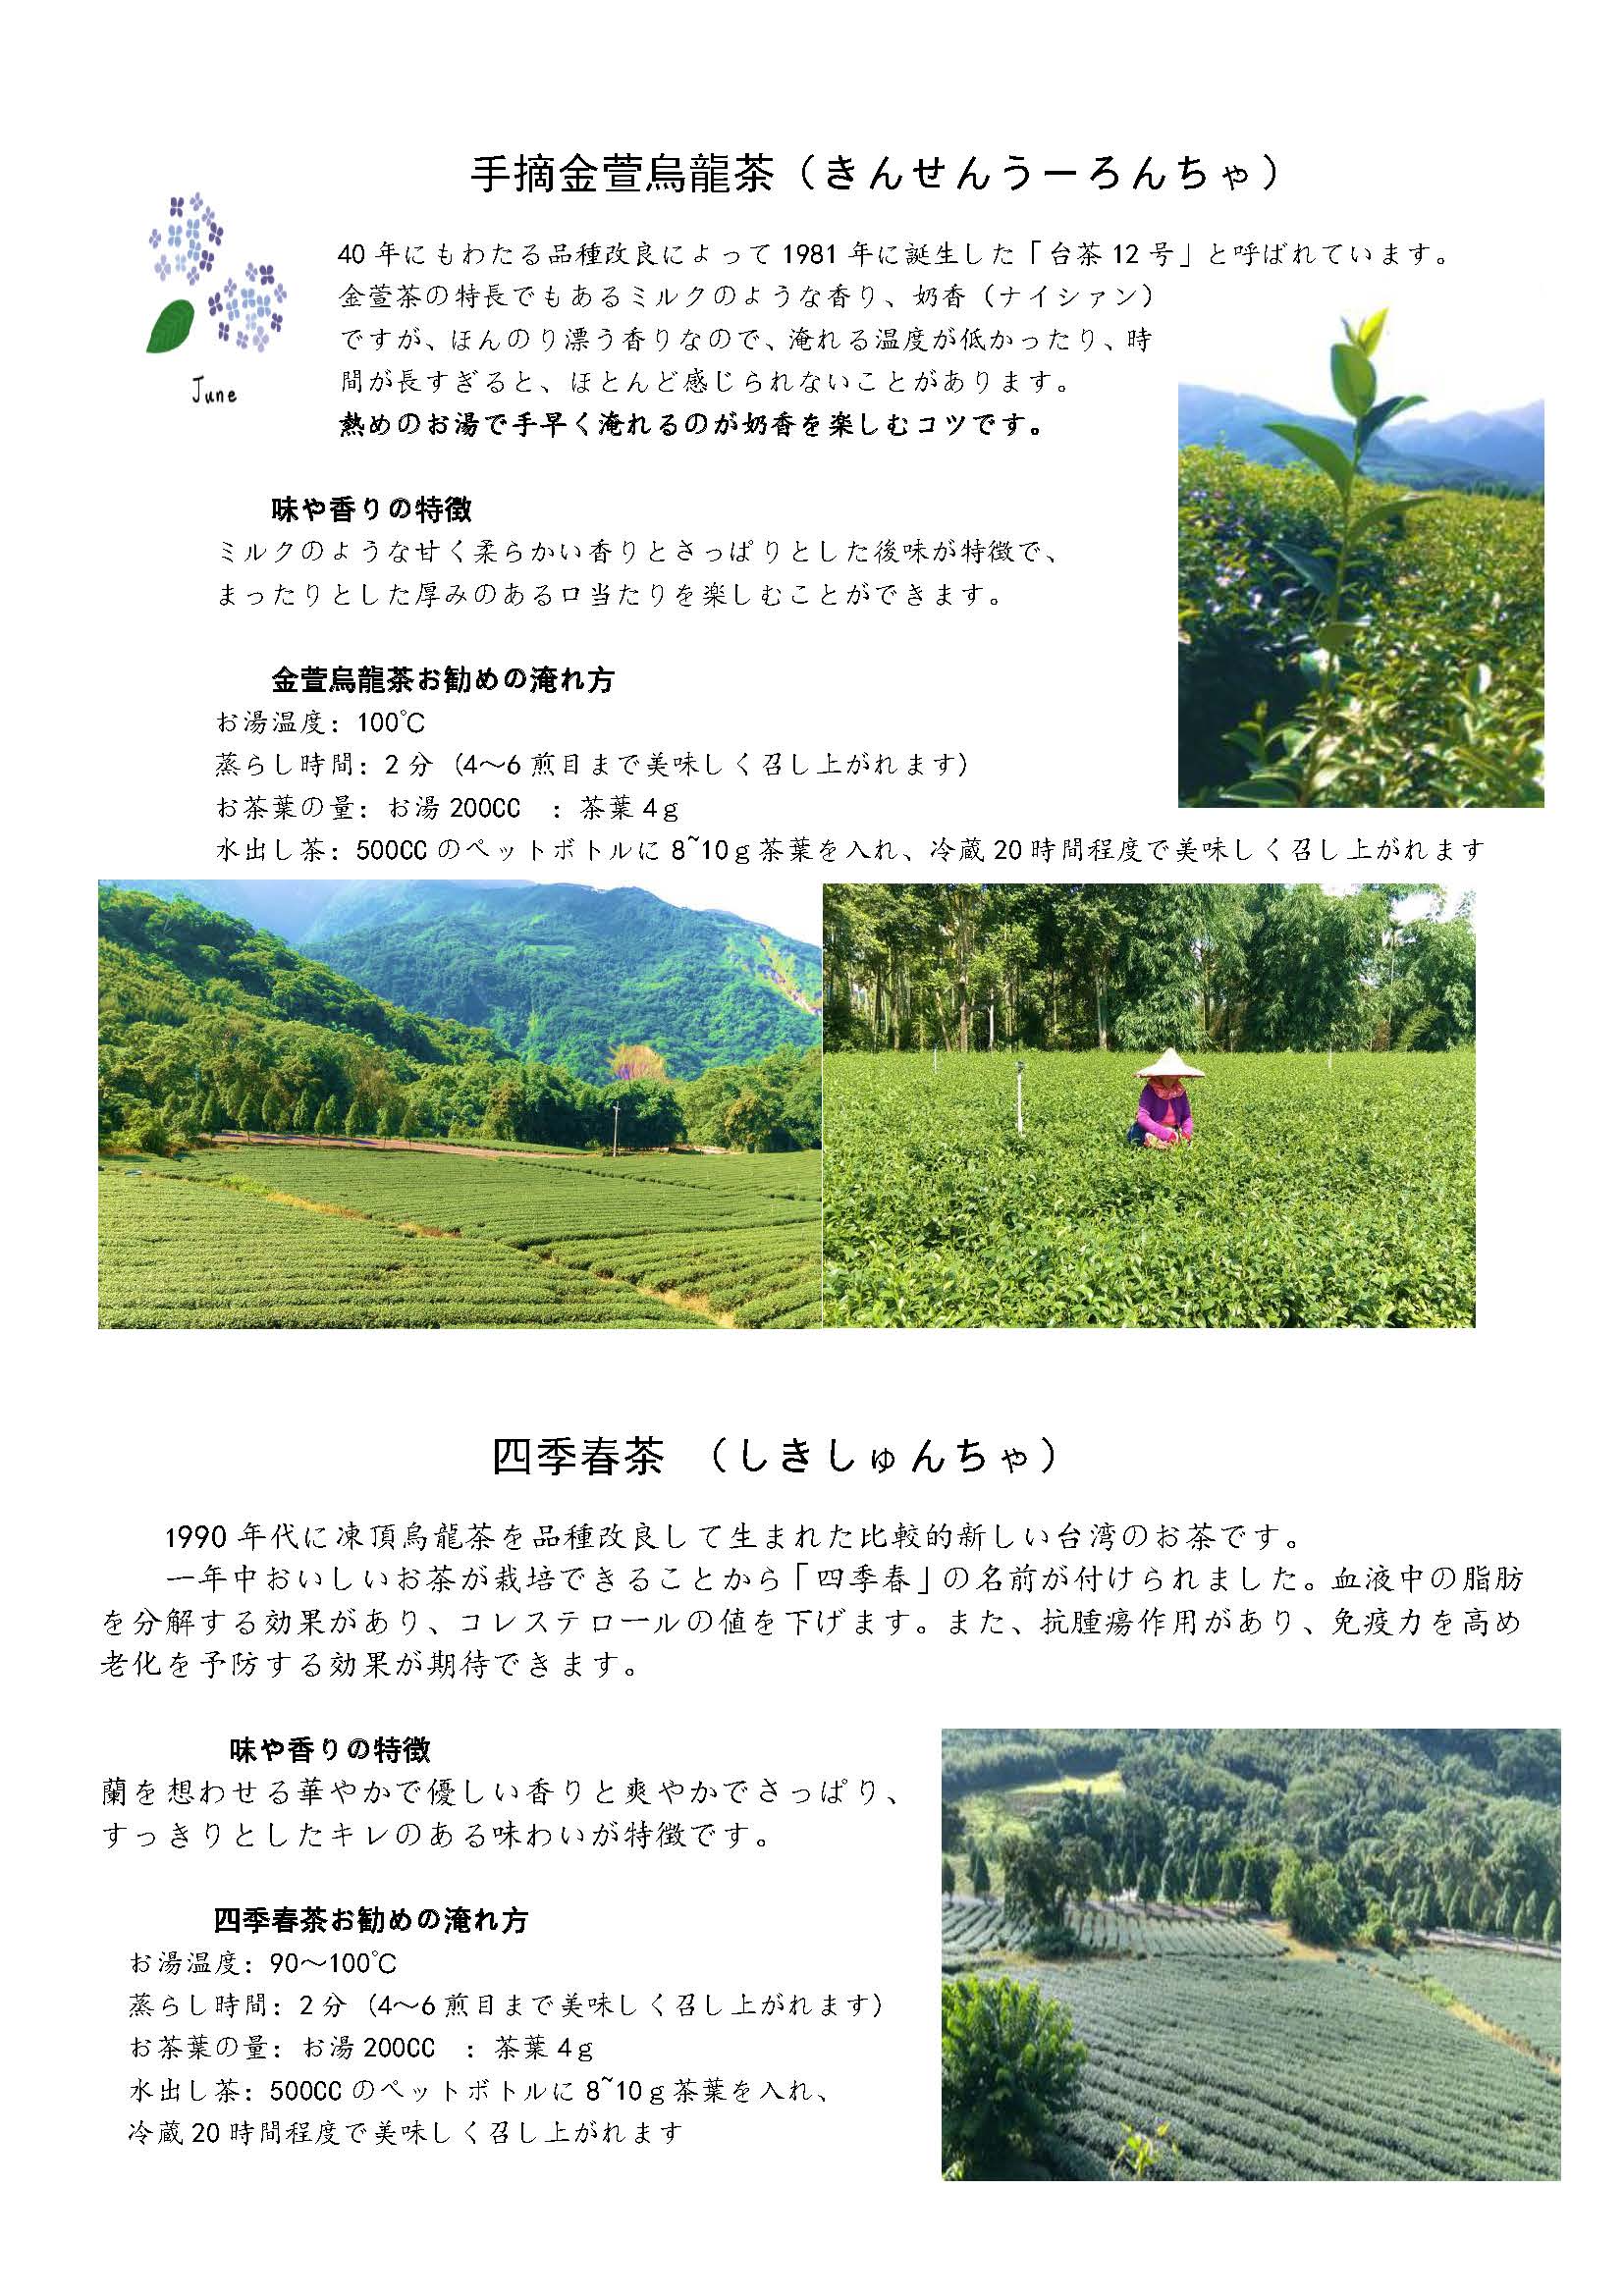 台湾烏龍茶体験講座